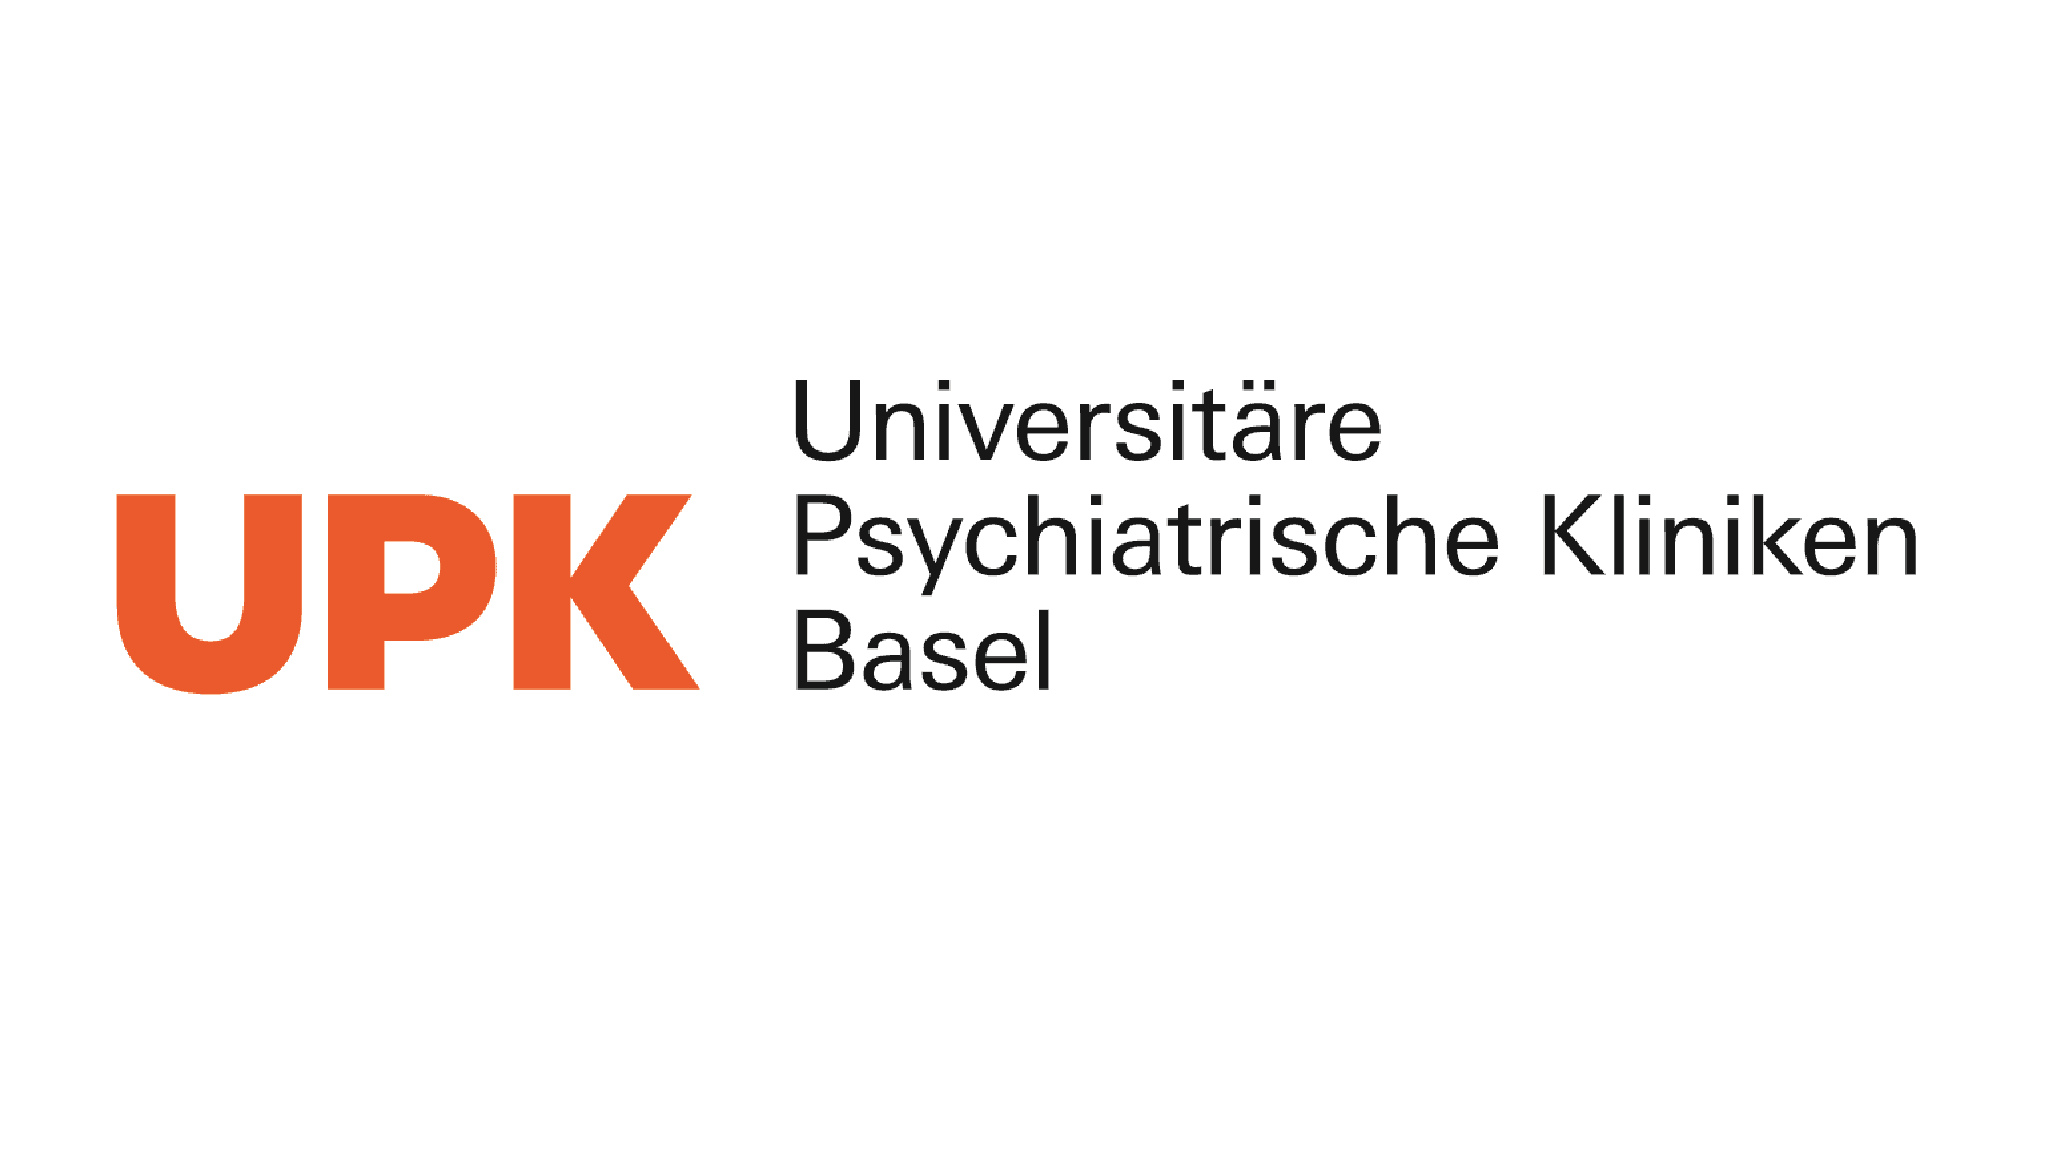 UPK_Basel_Logo